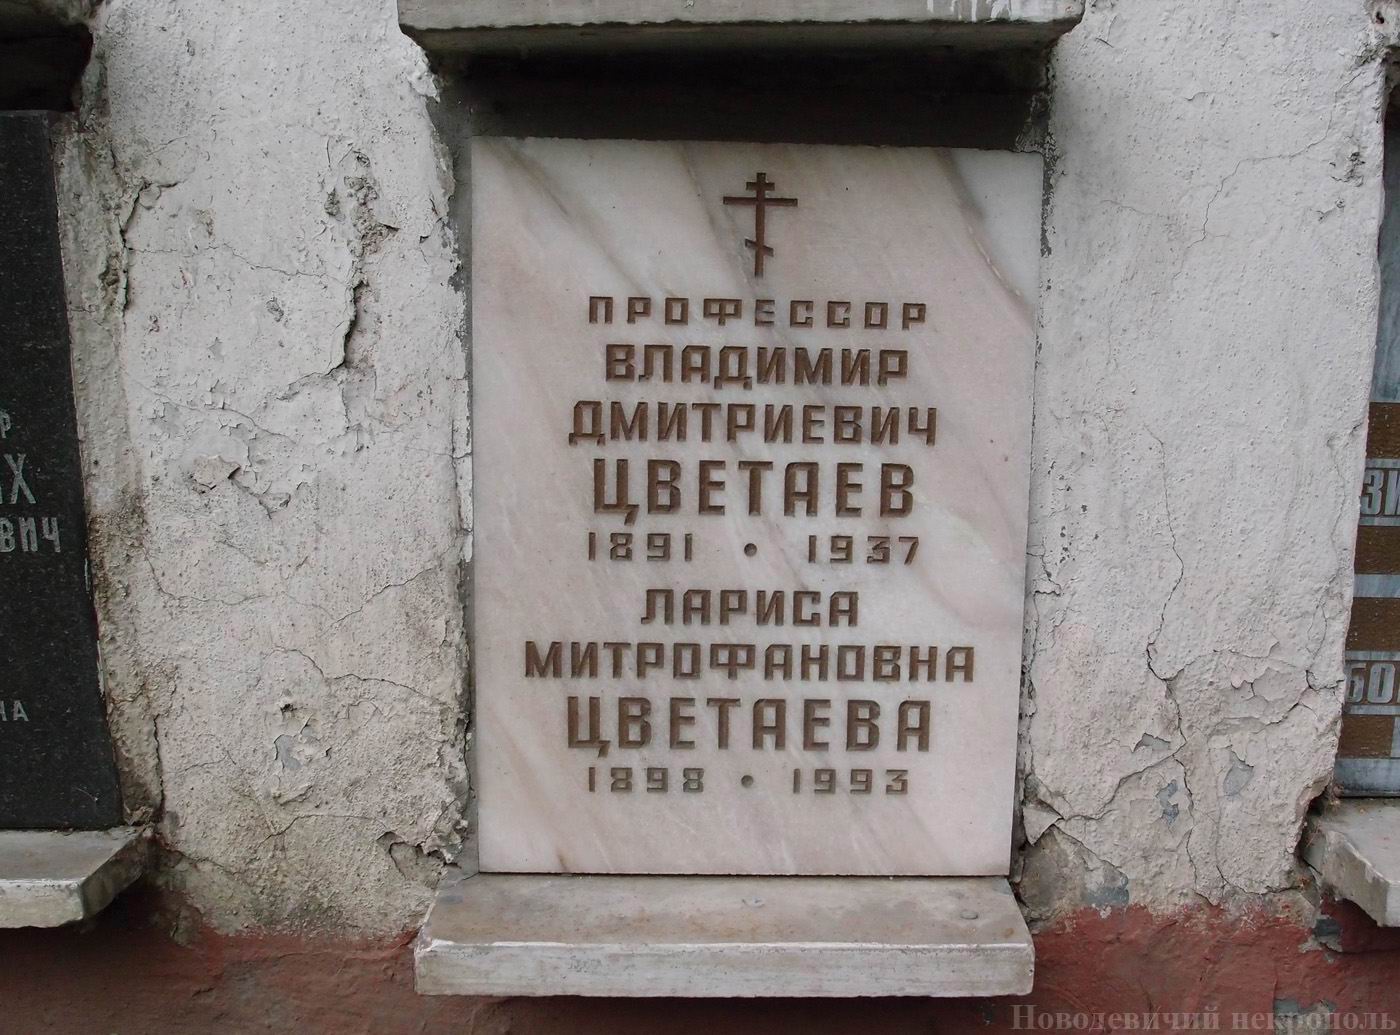 Плита на нише Цветаева В.Д. (1891-1937), на Новодевичьем кладбище (колумбарий [38]-4-4).